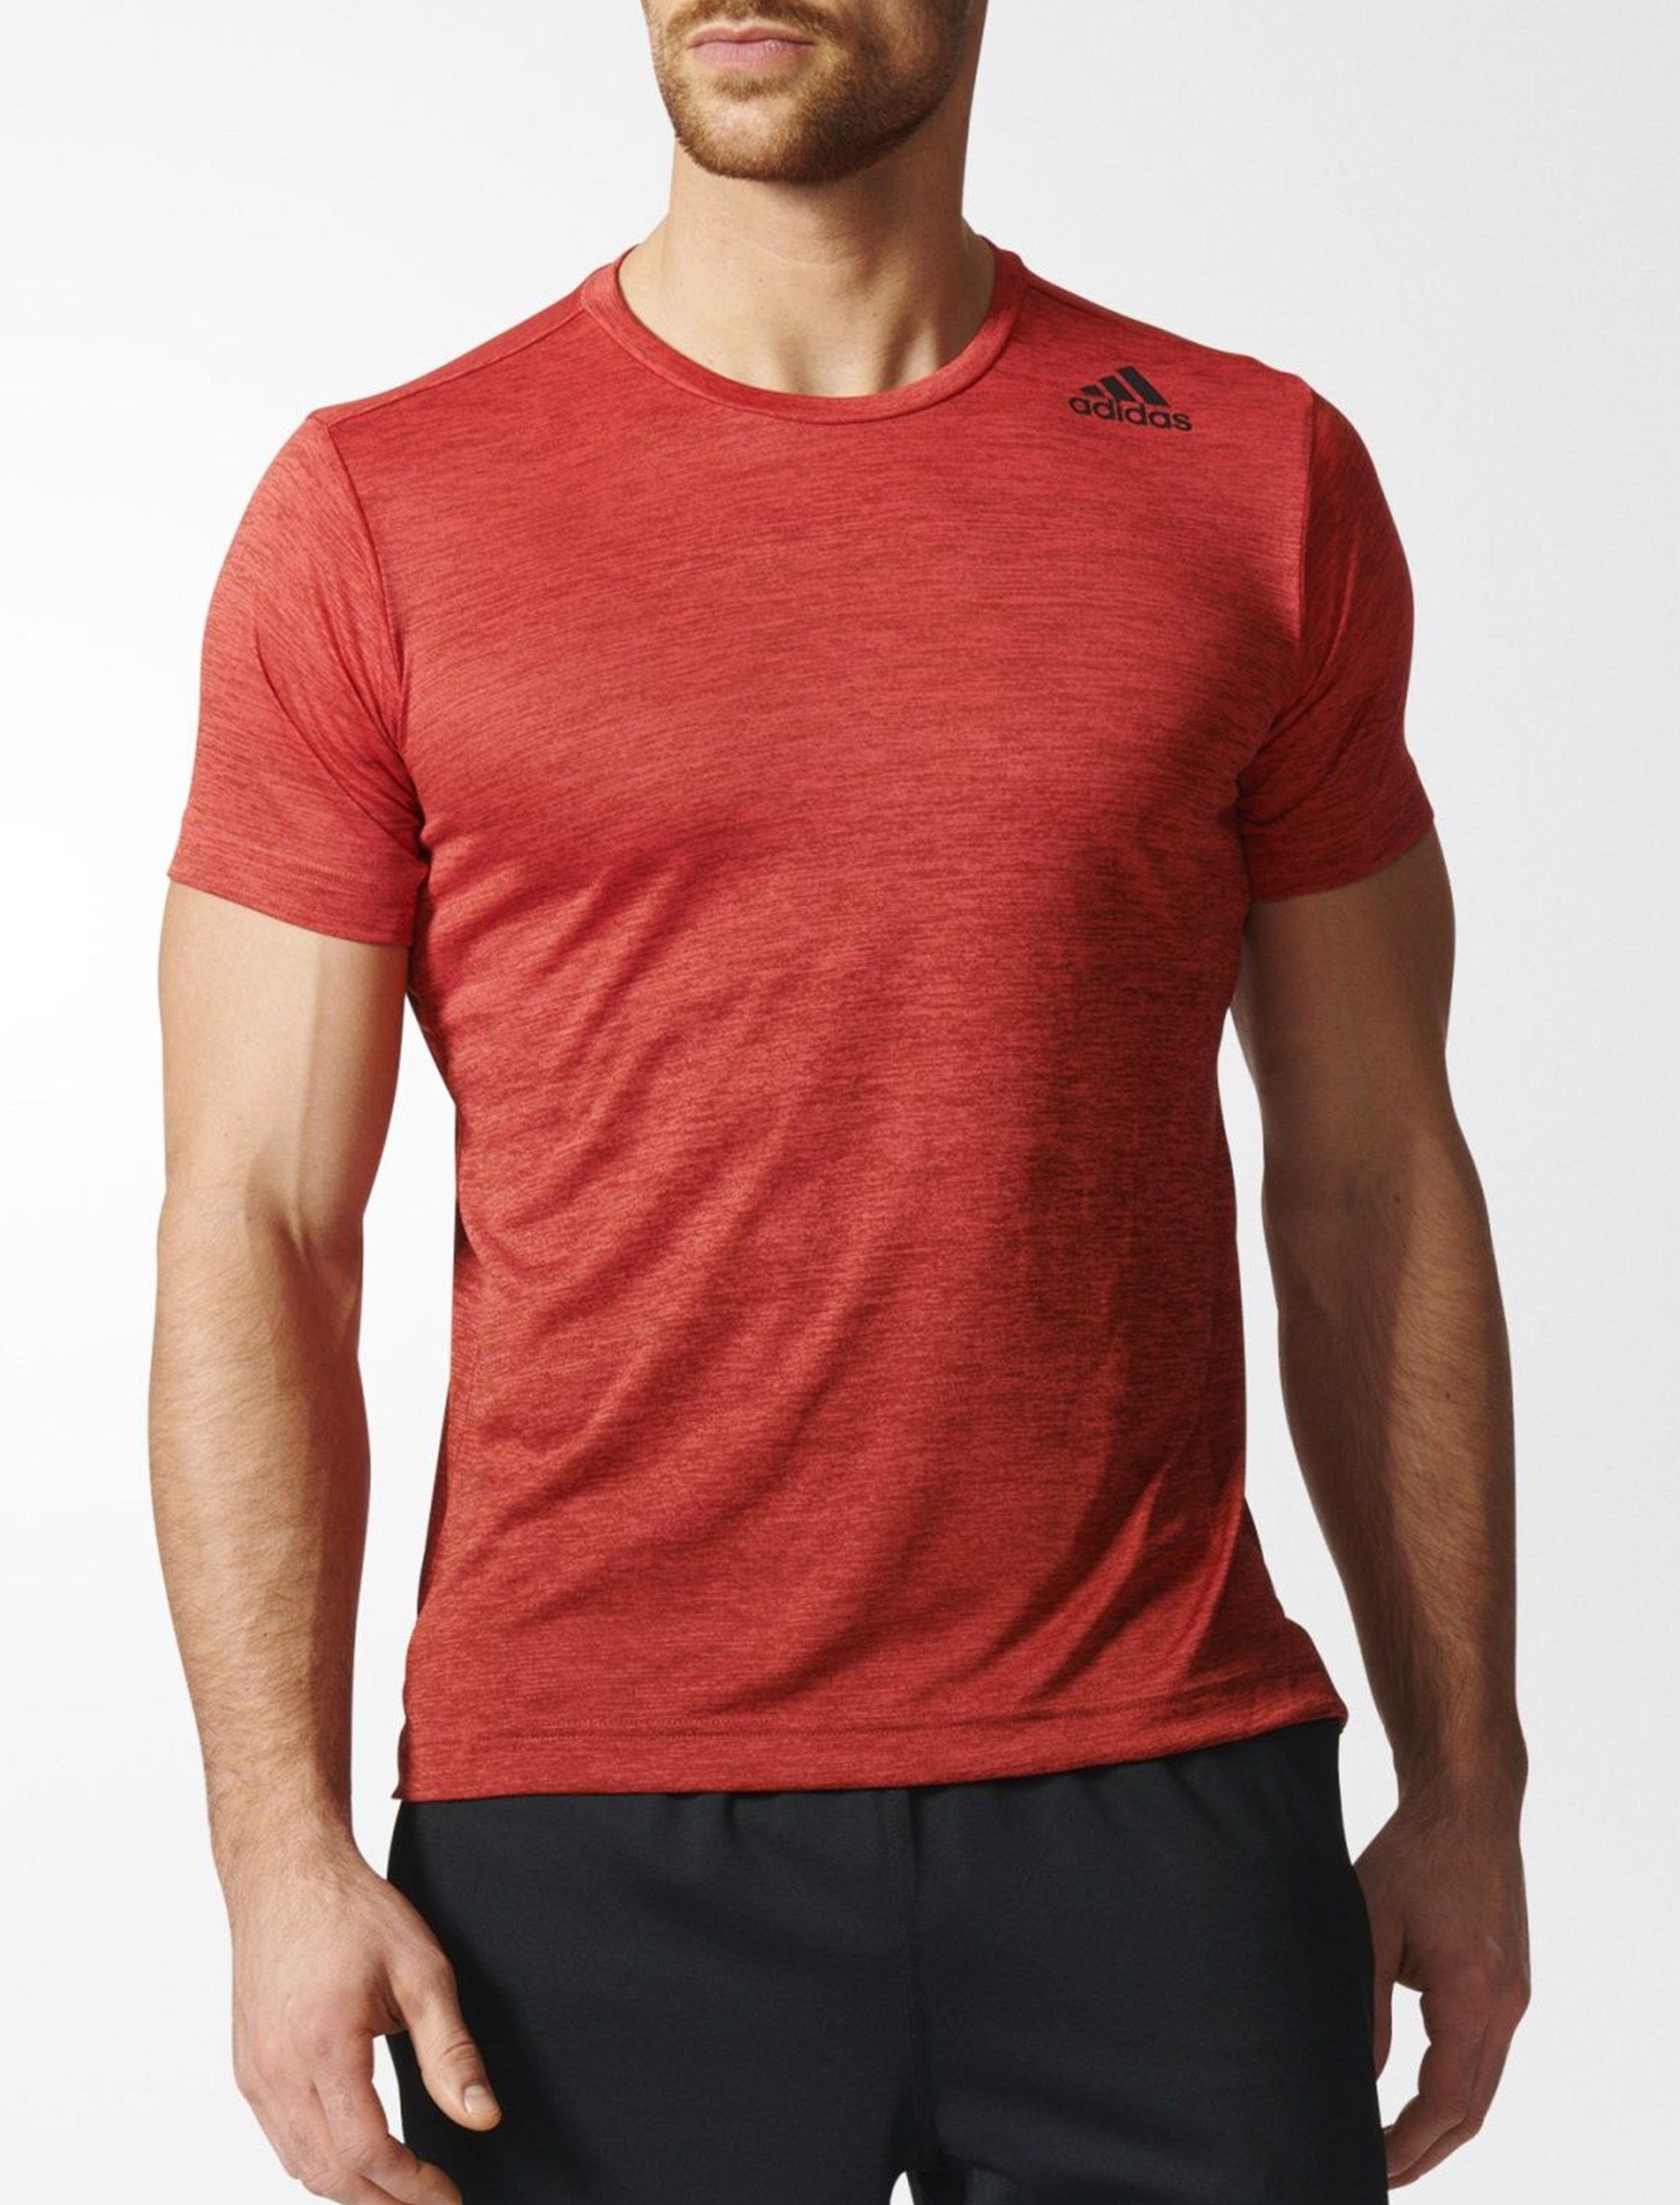 تی شرت ورزشی یقه گرد مردانه FreeLift Gradient - آدیداس - قرمز - 4